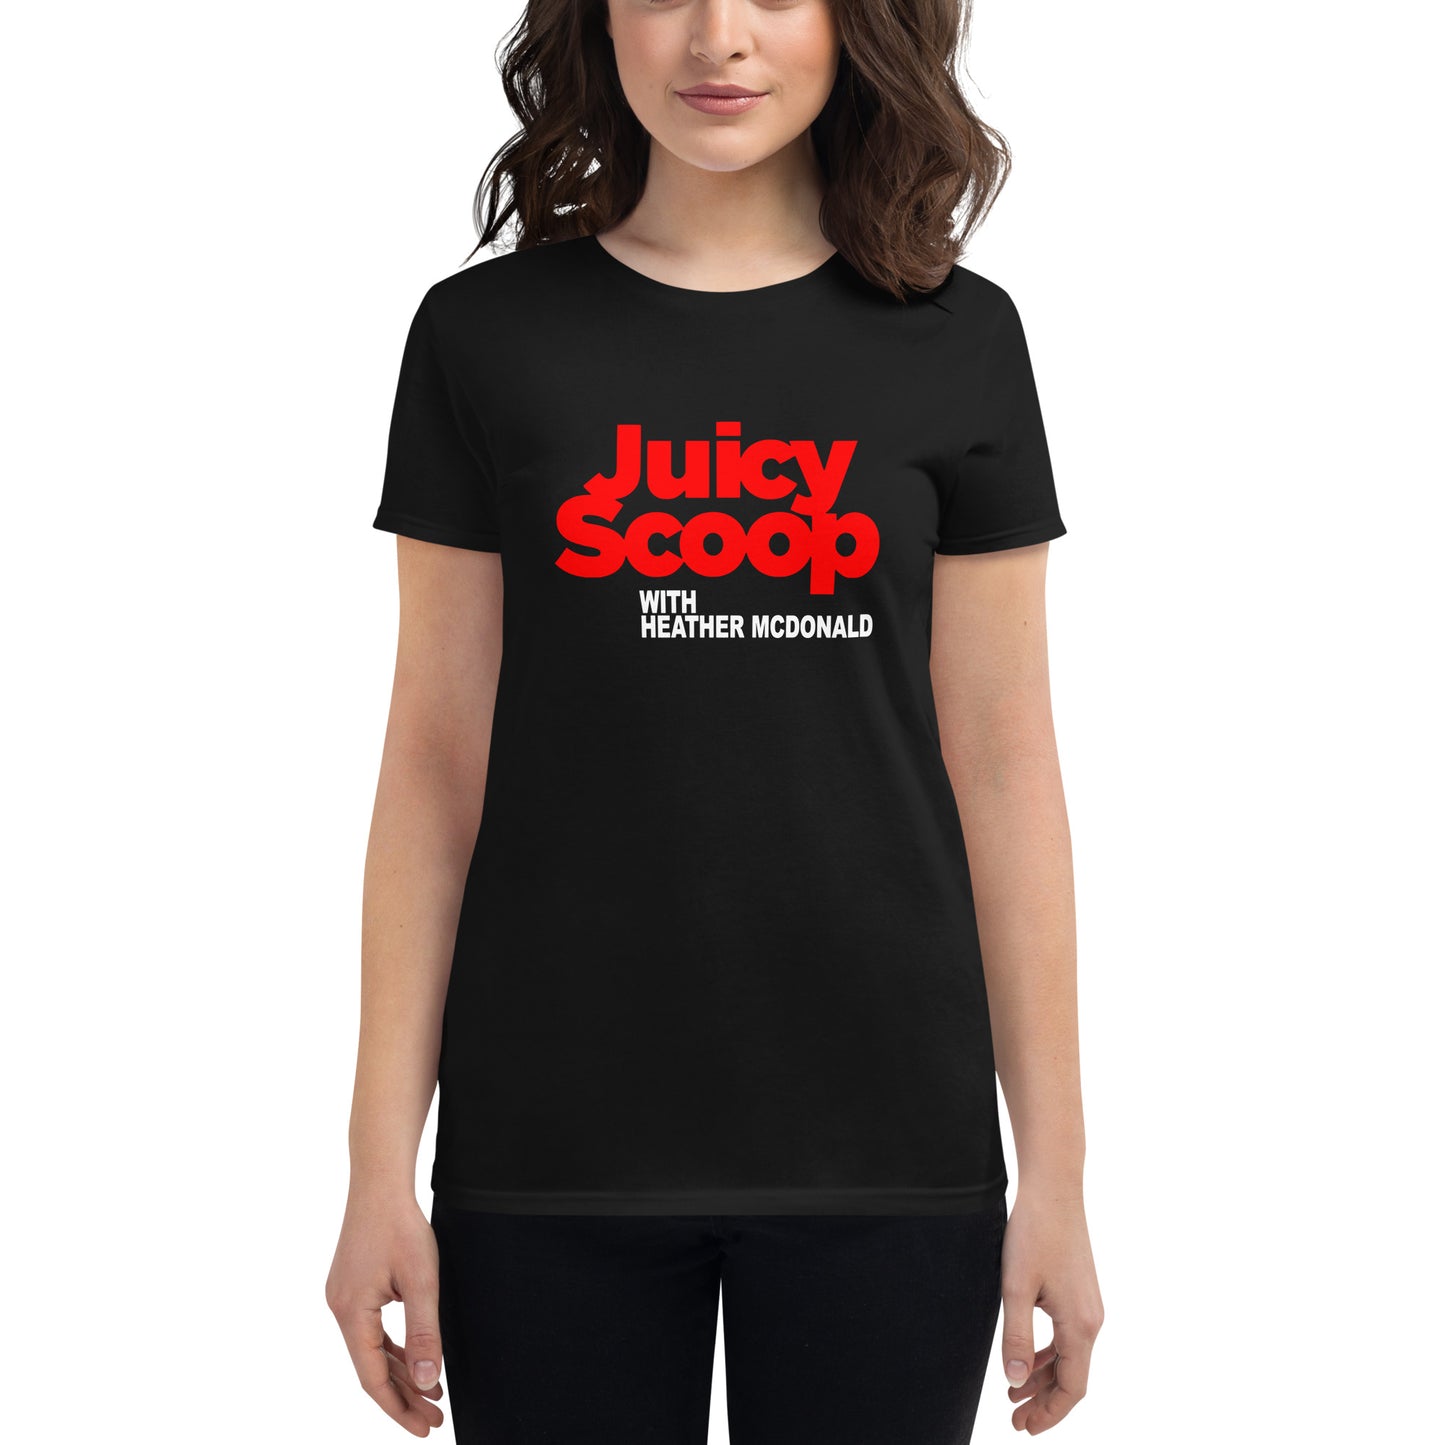 Juicy Scoop with Heather McDonald Women's Short Sleeve T-Shirt